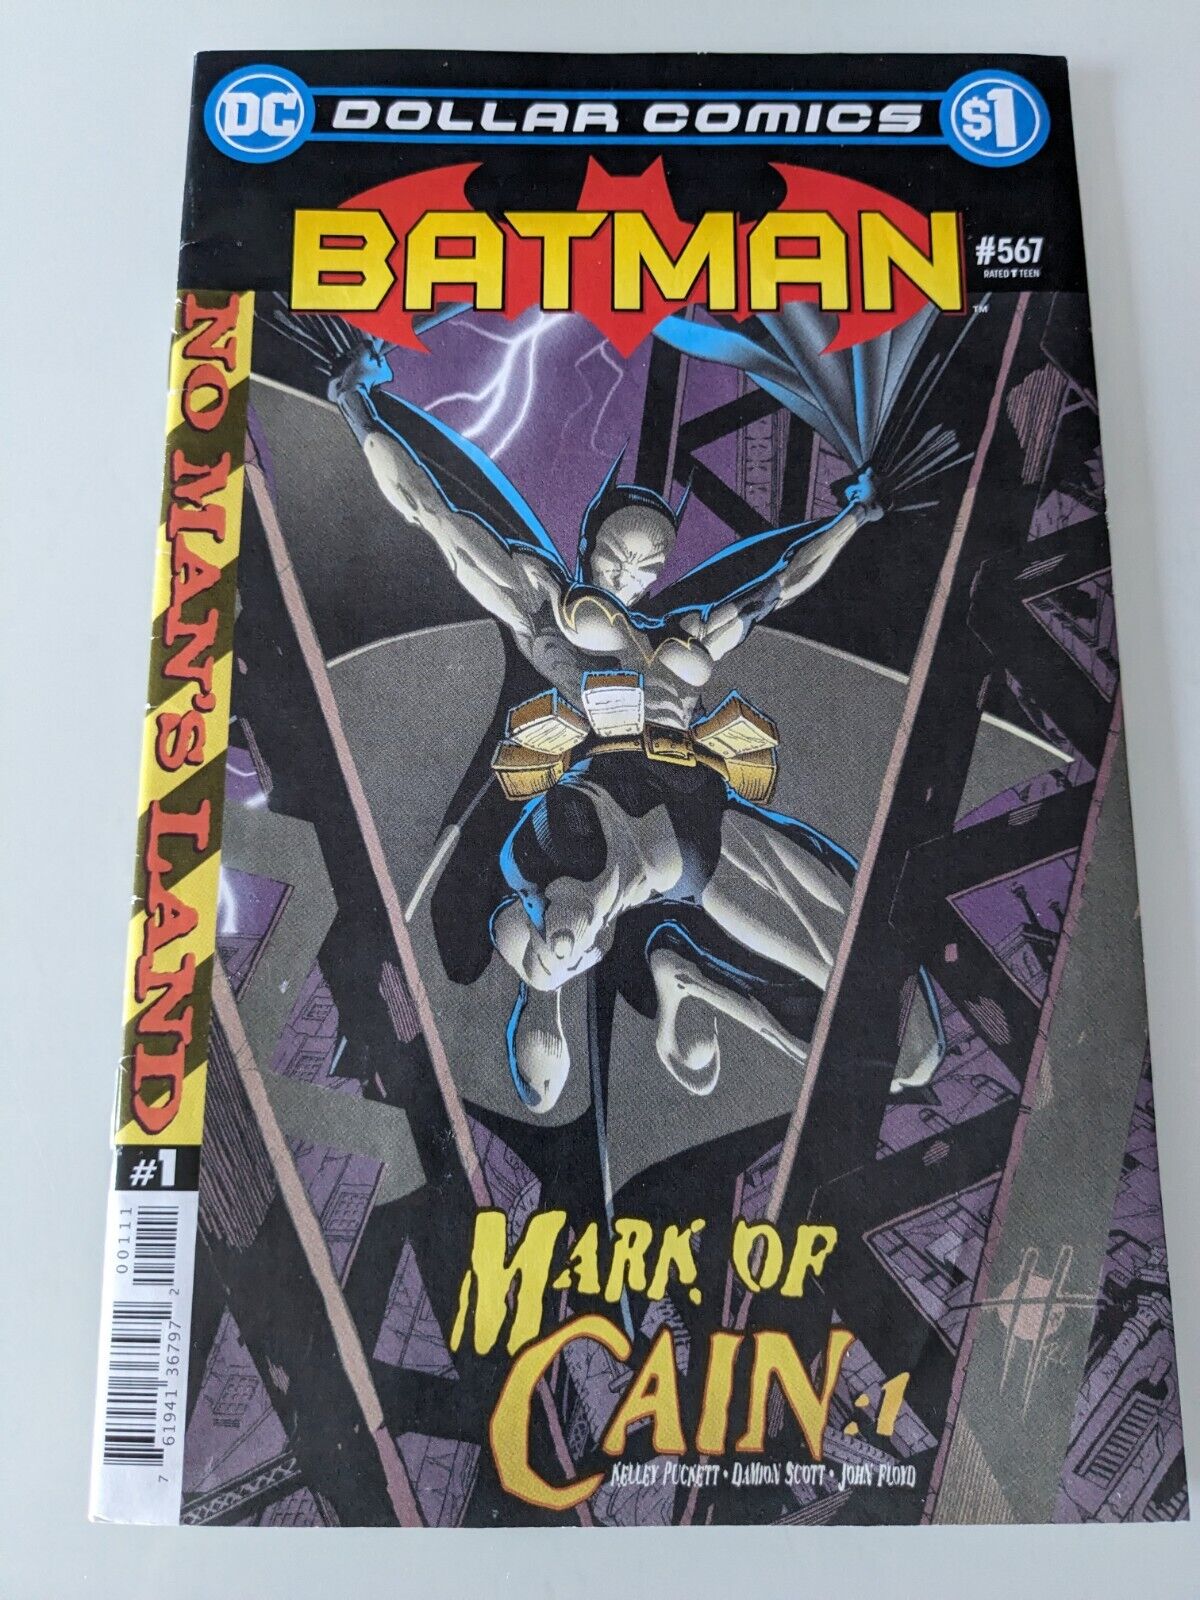 DC Batman Dollar Comics #567